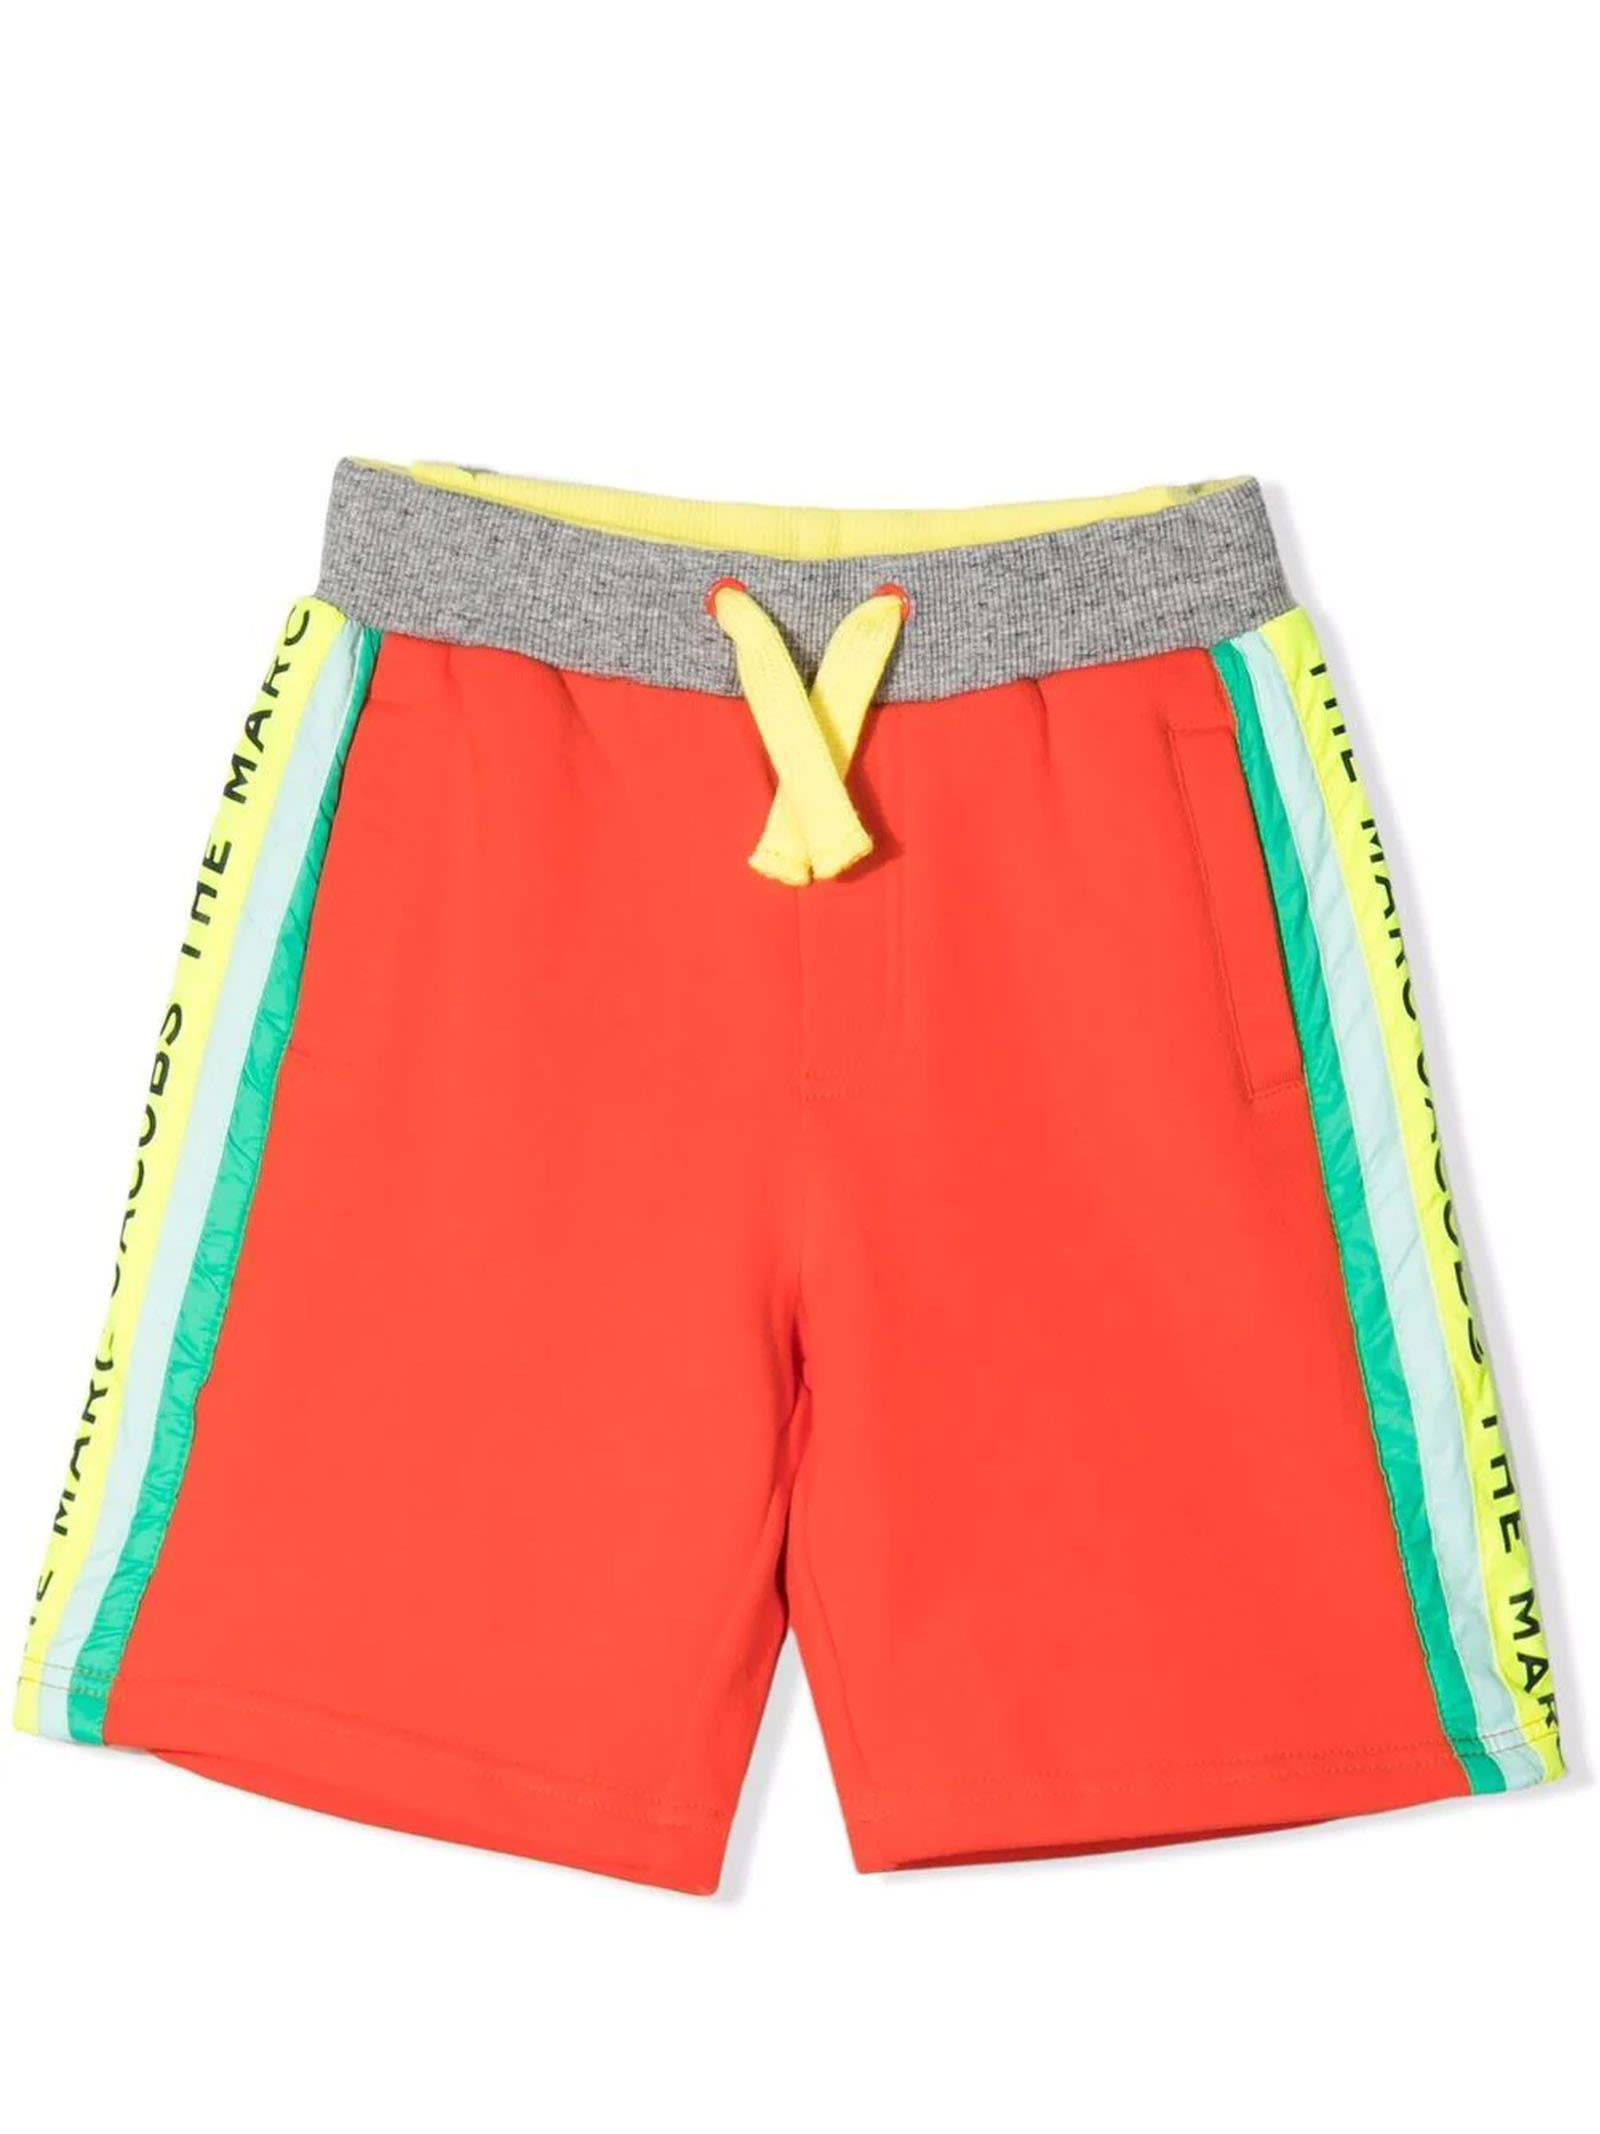 Marc Jacobs Orange Cotton Shorts